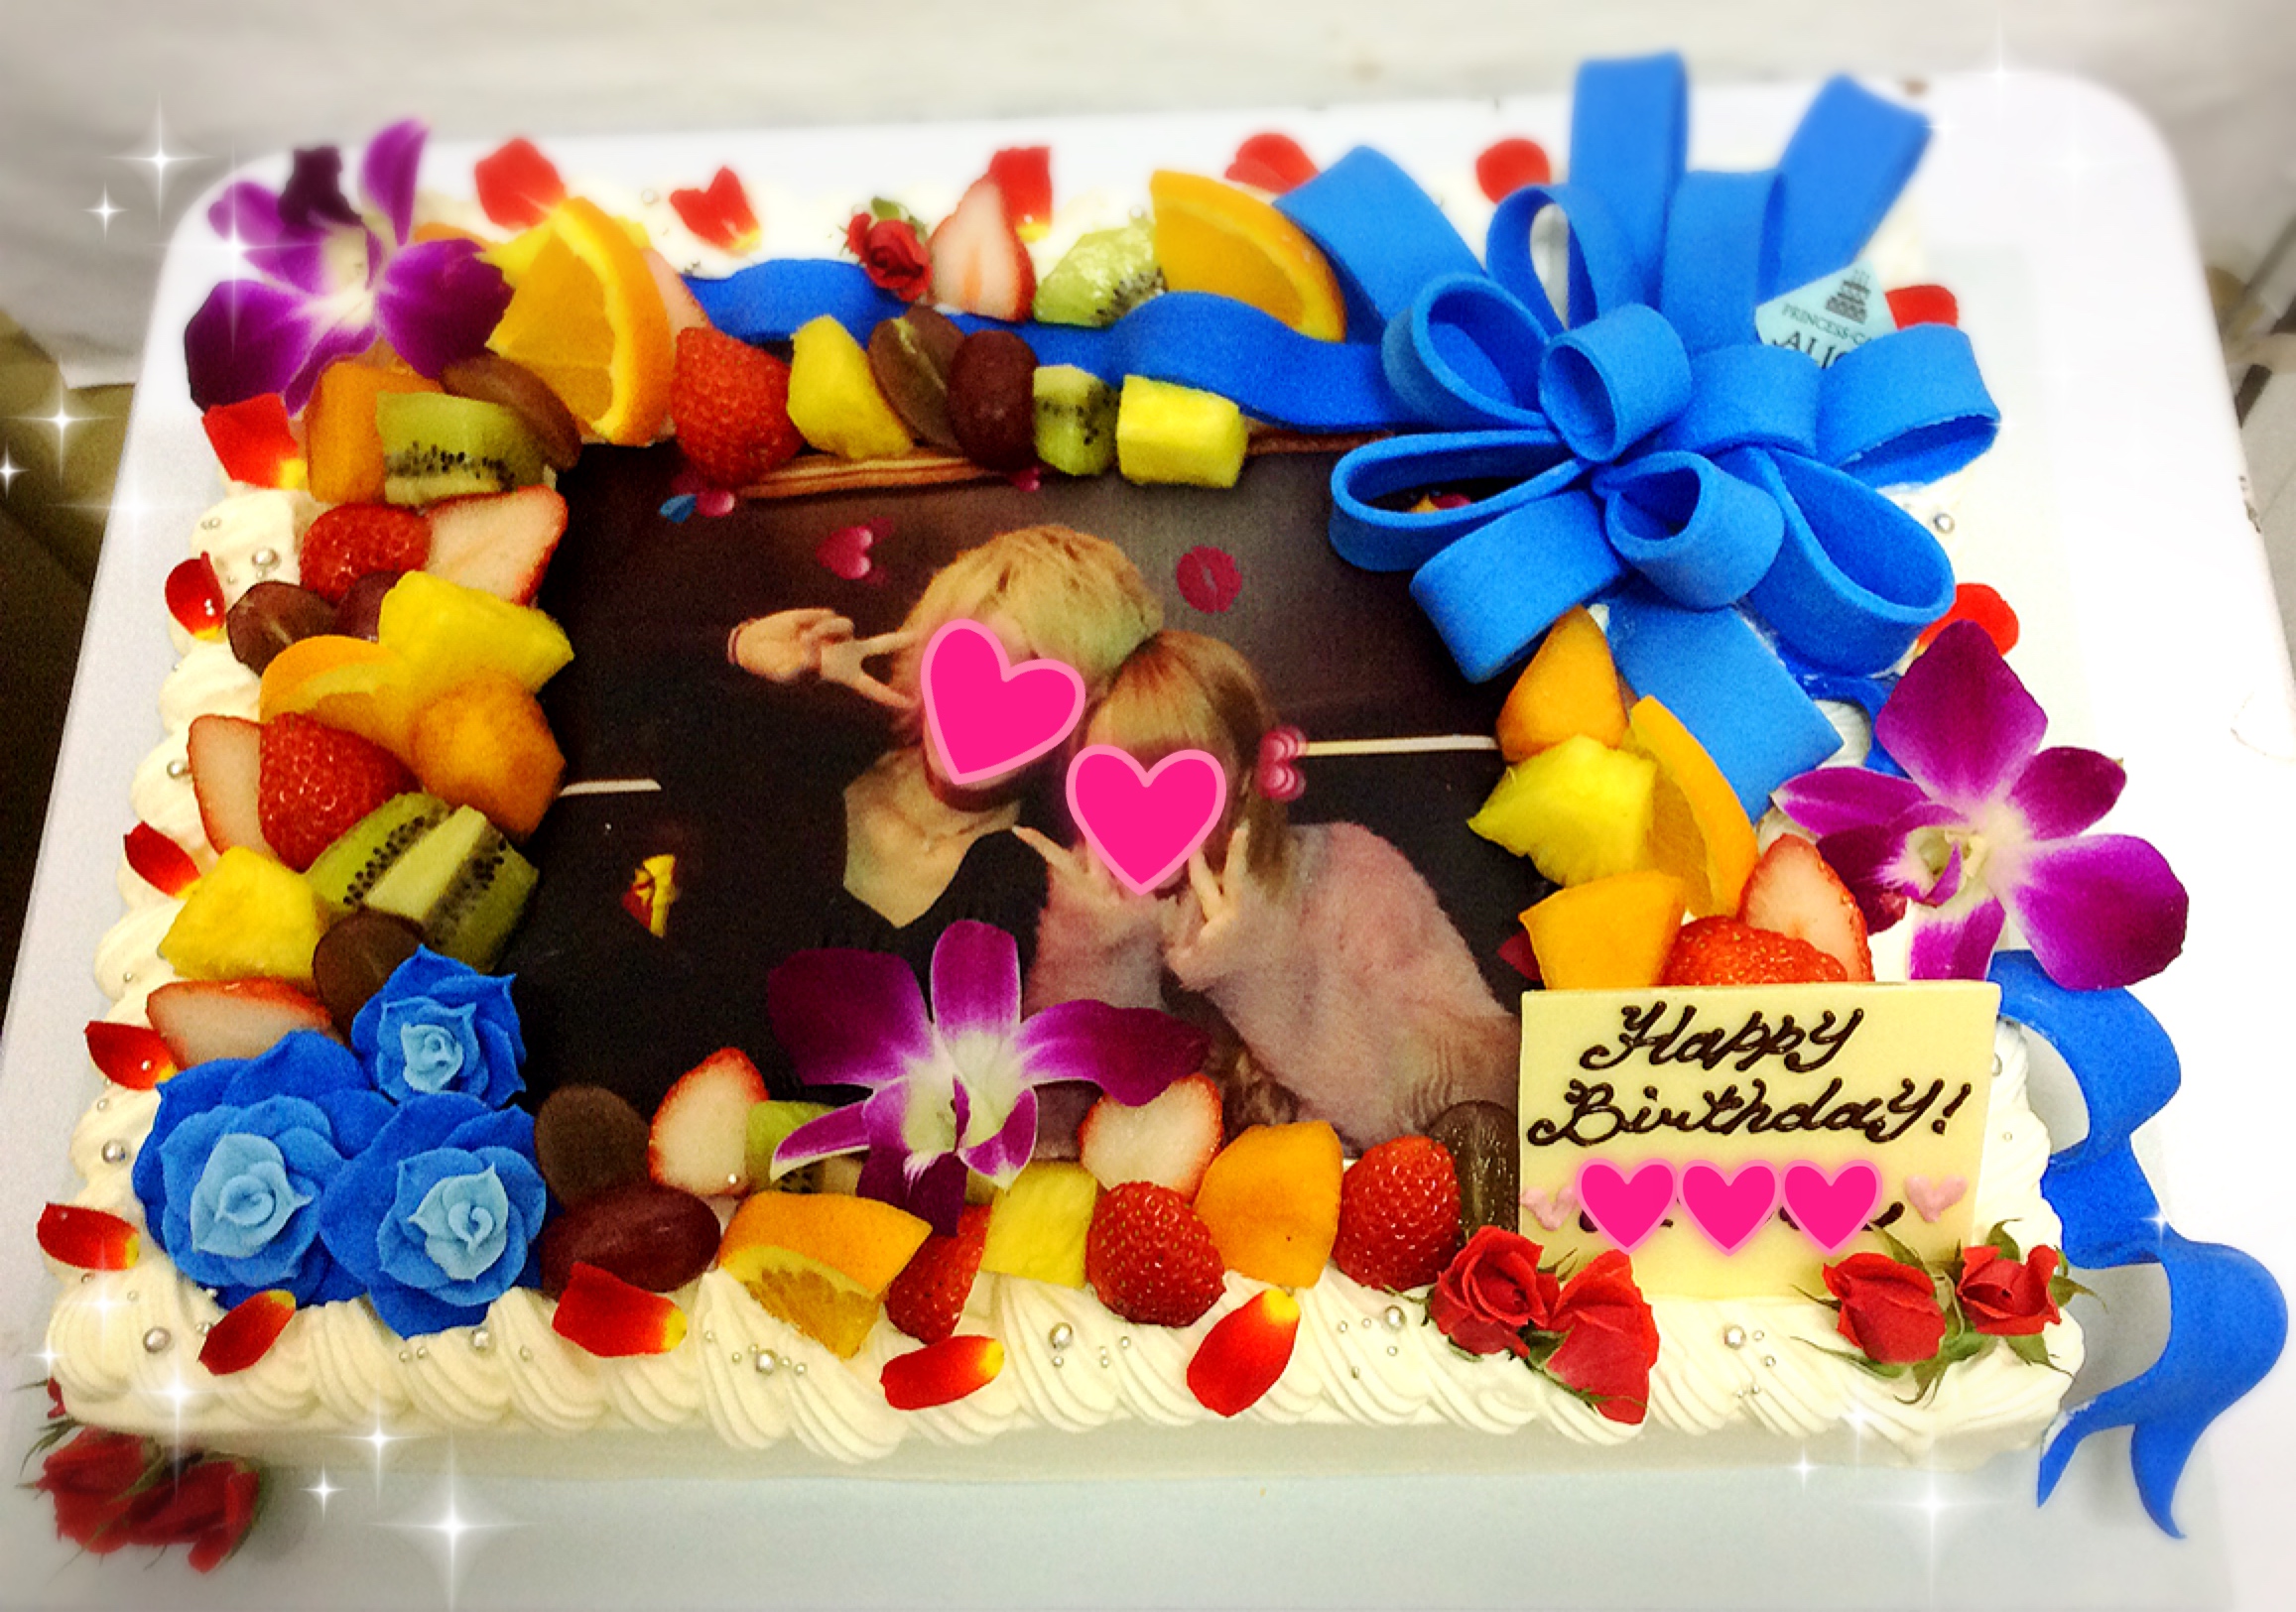 リボンとバラの豪華な写真ケーキ 大阪でオーダーケーキなら大阪ミナミ なんば 心斎橋の宅配ケーキ プリンセスケーキアリス